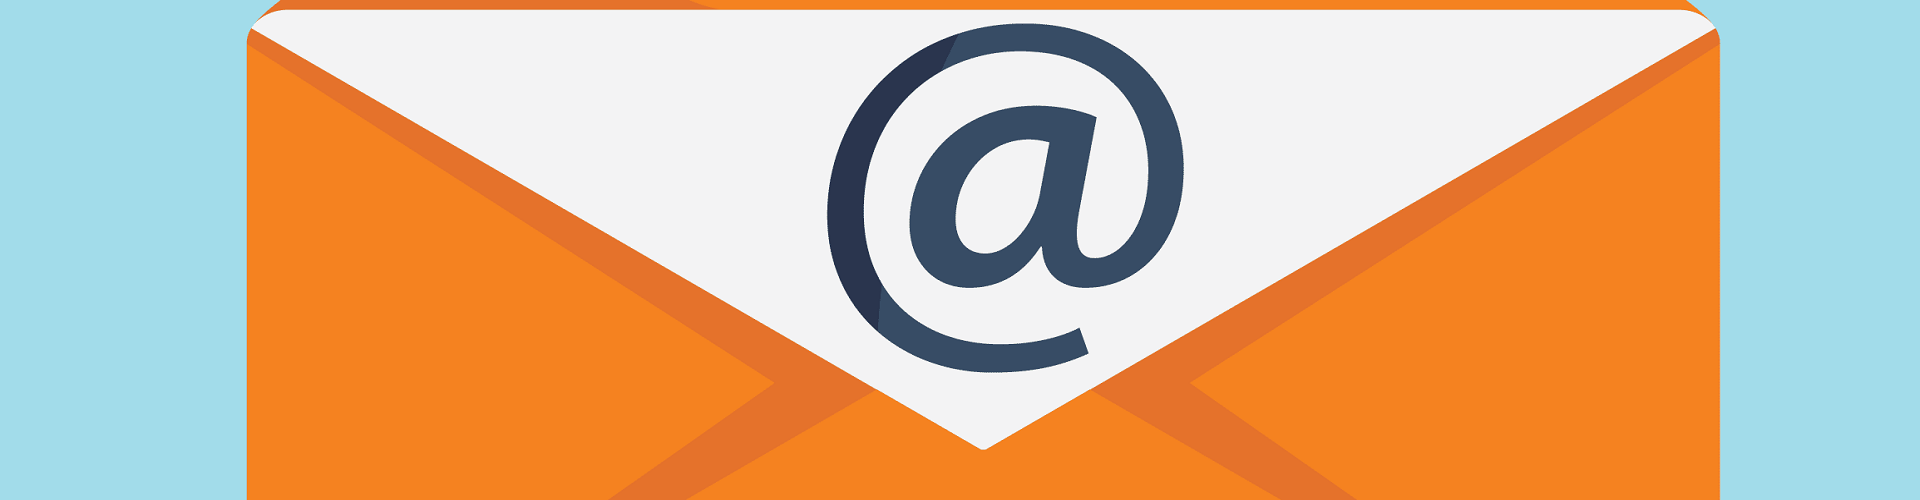 Làm thế nào để phân biệt Email Marketing và Email Spam?